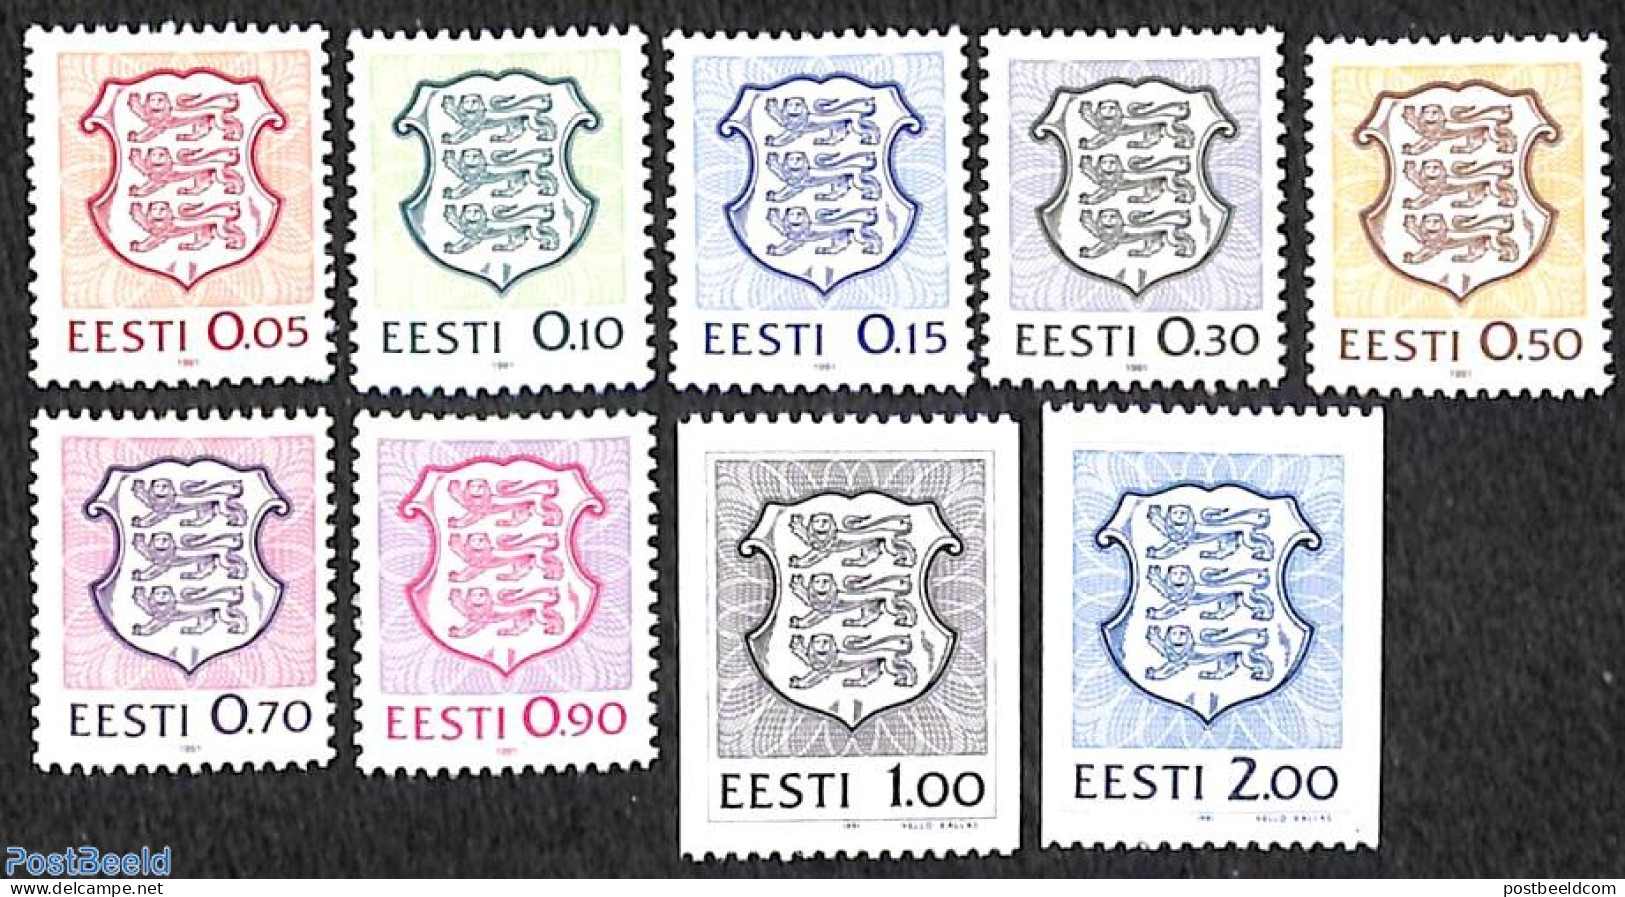 Estonia 1991 Definitives 9v, Mint NH, History - Coat Of Arms - Estonie